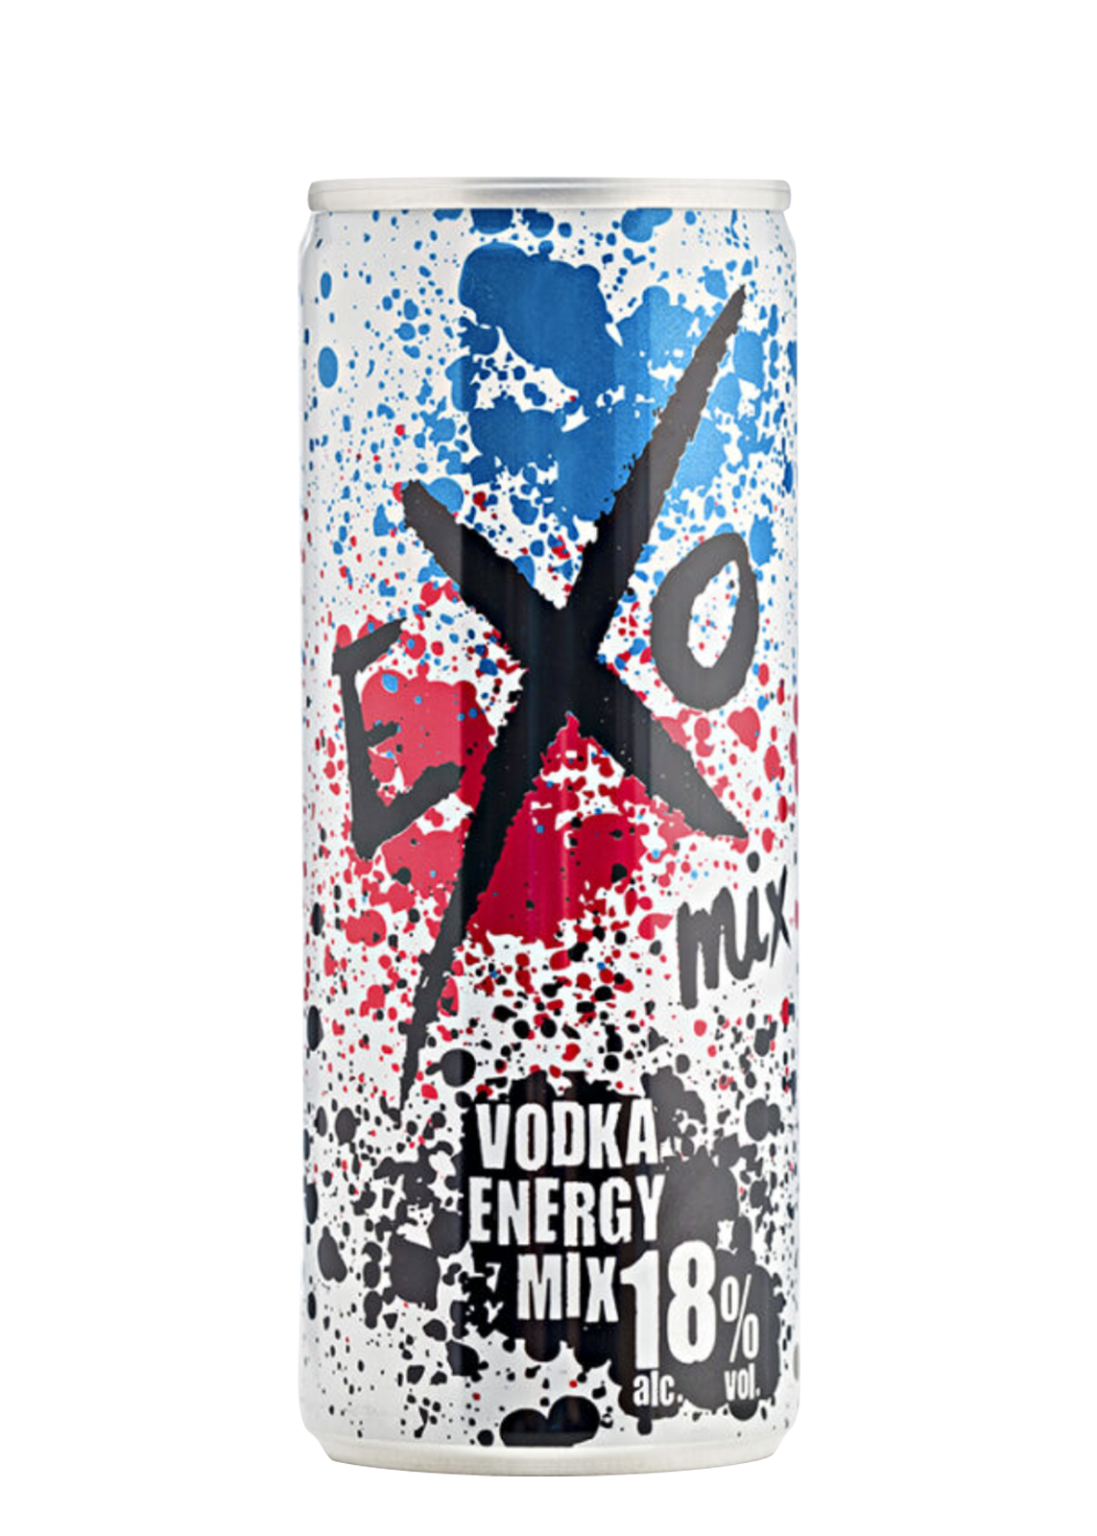 Exo vodka energy mix x 250ml | Strand Palace Agencies Ltd.